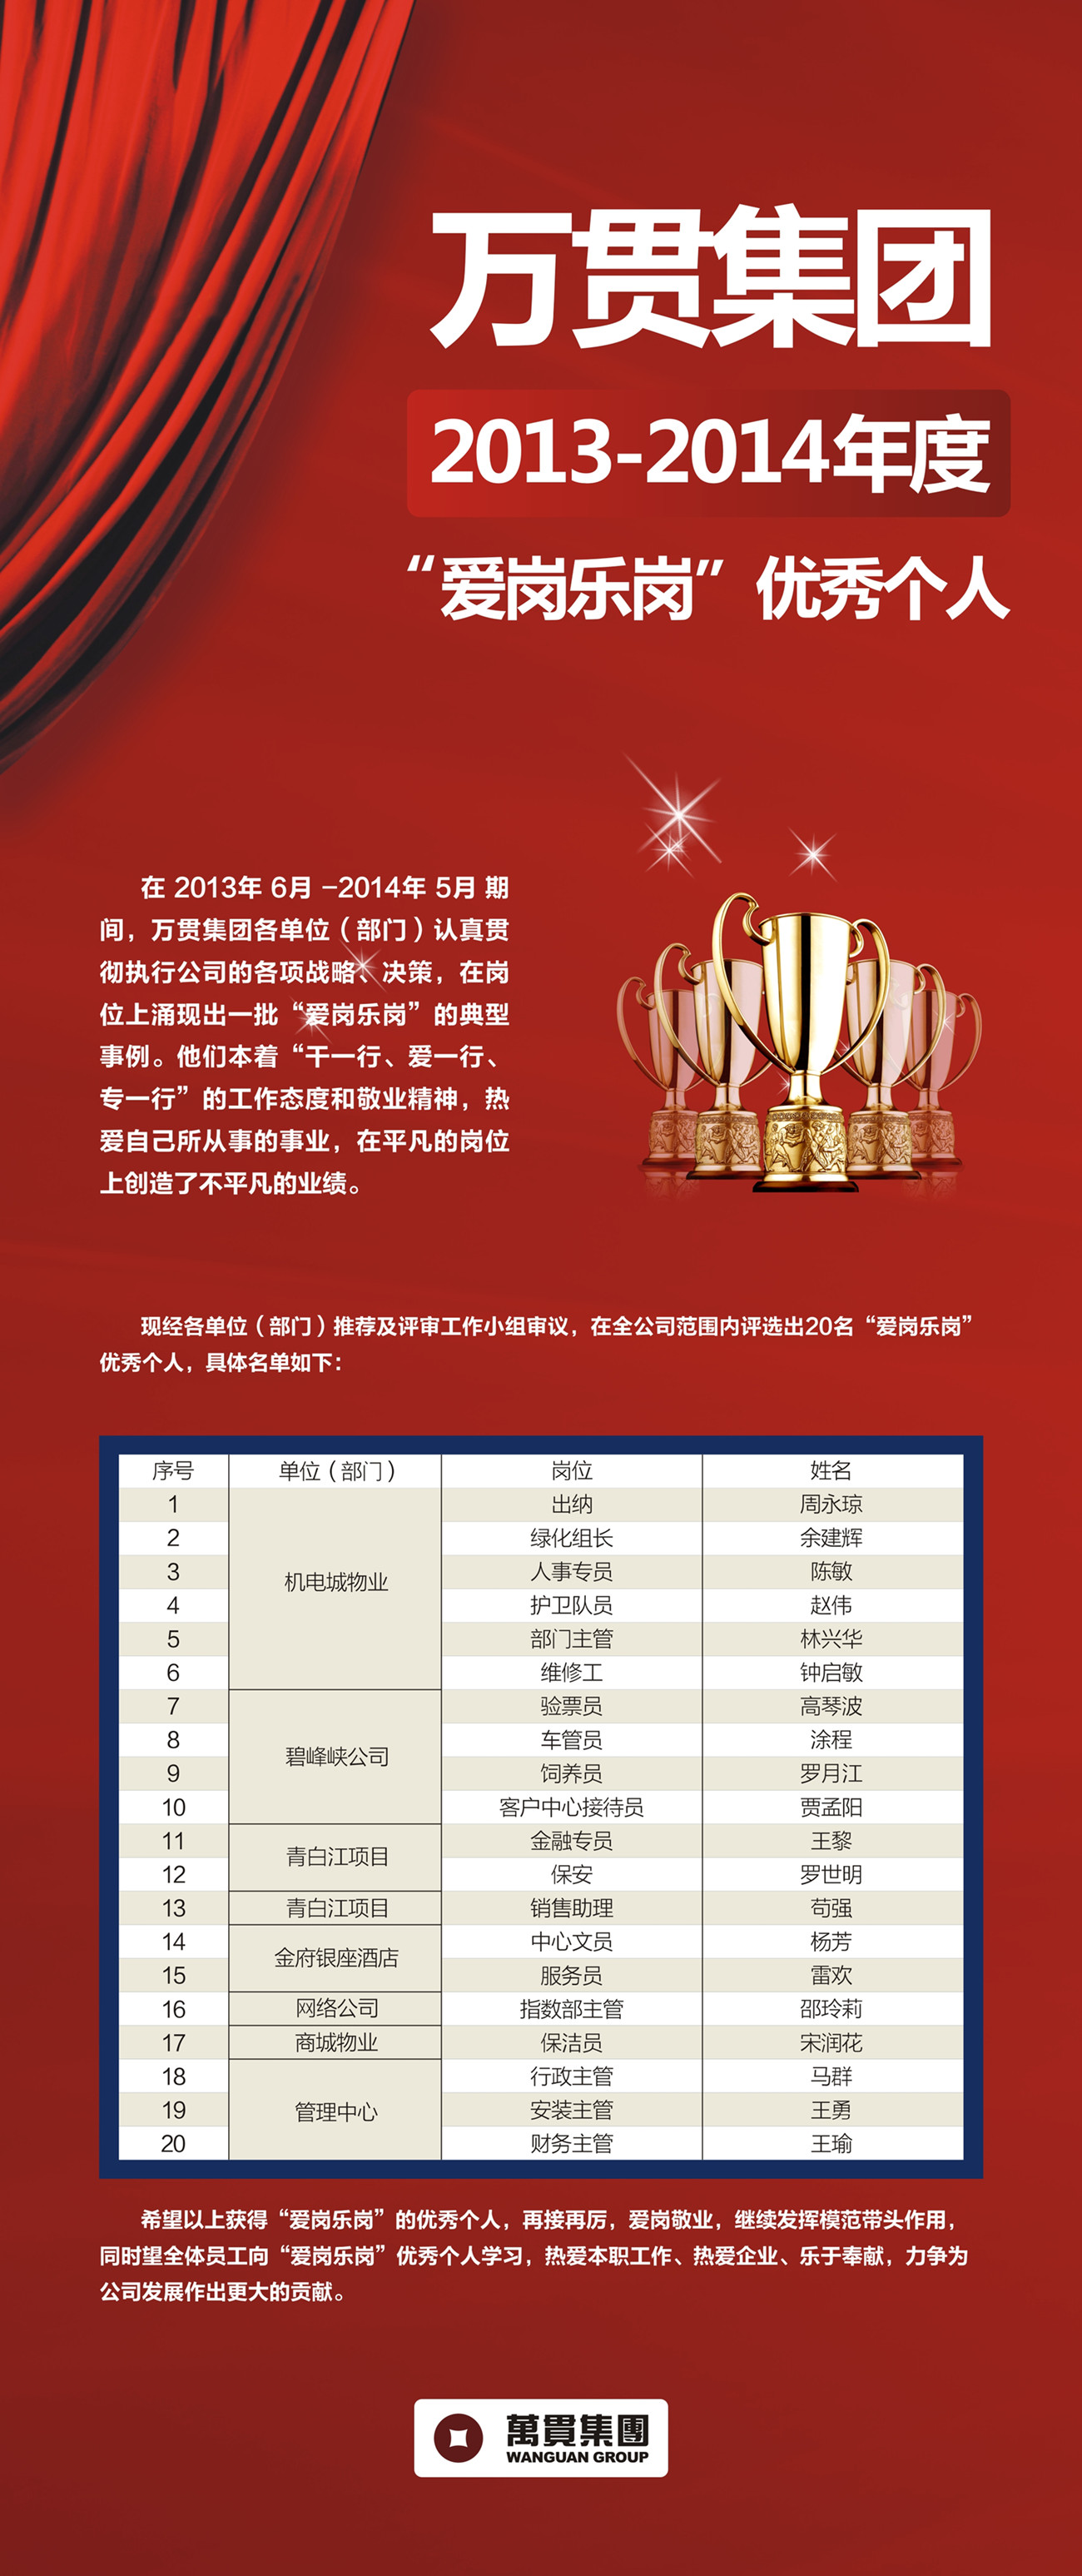 冠军体育(中国)责任有限公司官网集团2013-2014年度“爱岗乐岗”优秀个人(图1)